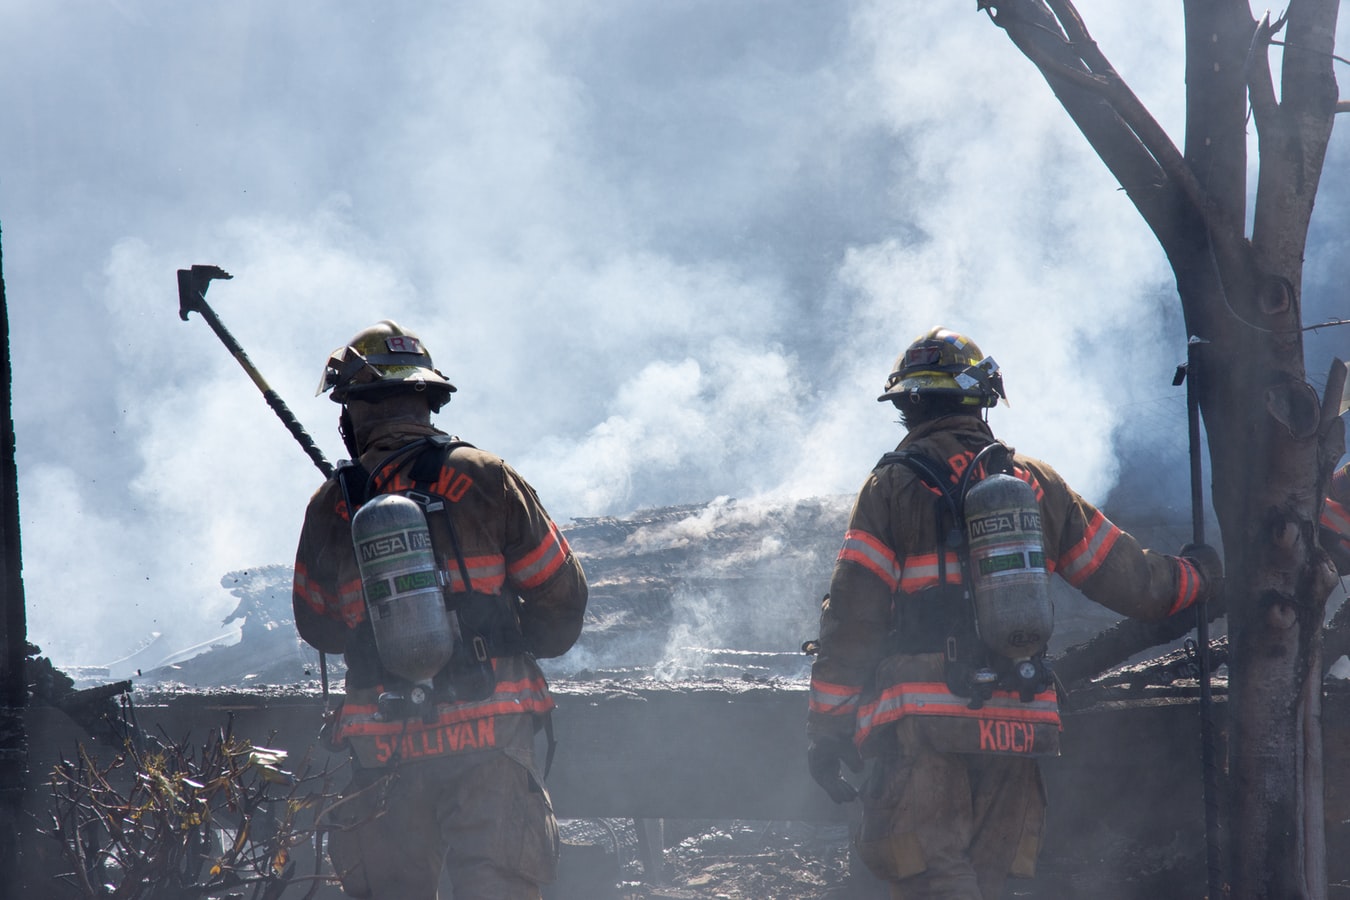 消防士の課題はドローン操縦 消防活動に貢献するために ドローンジョプラス